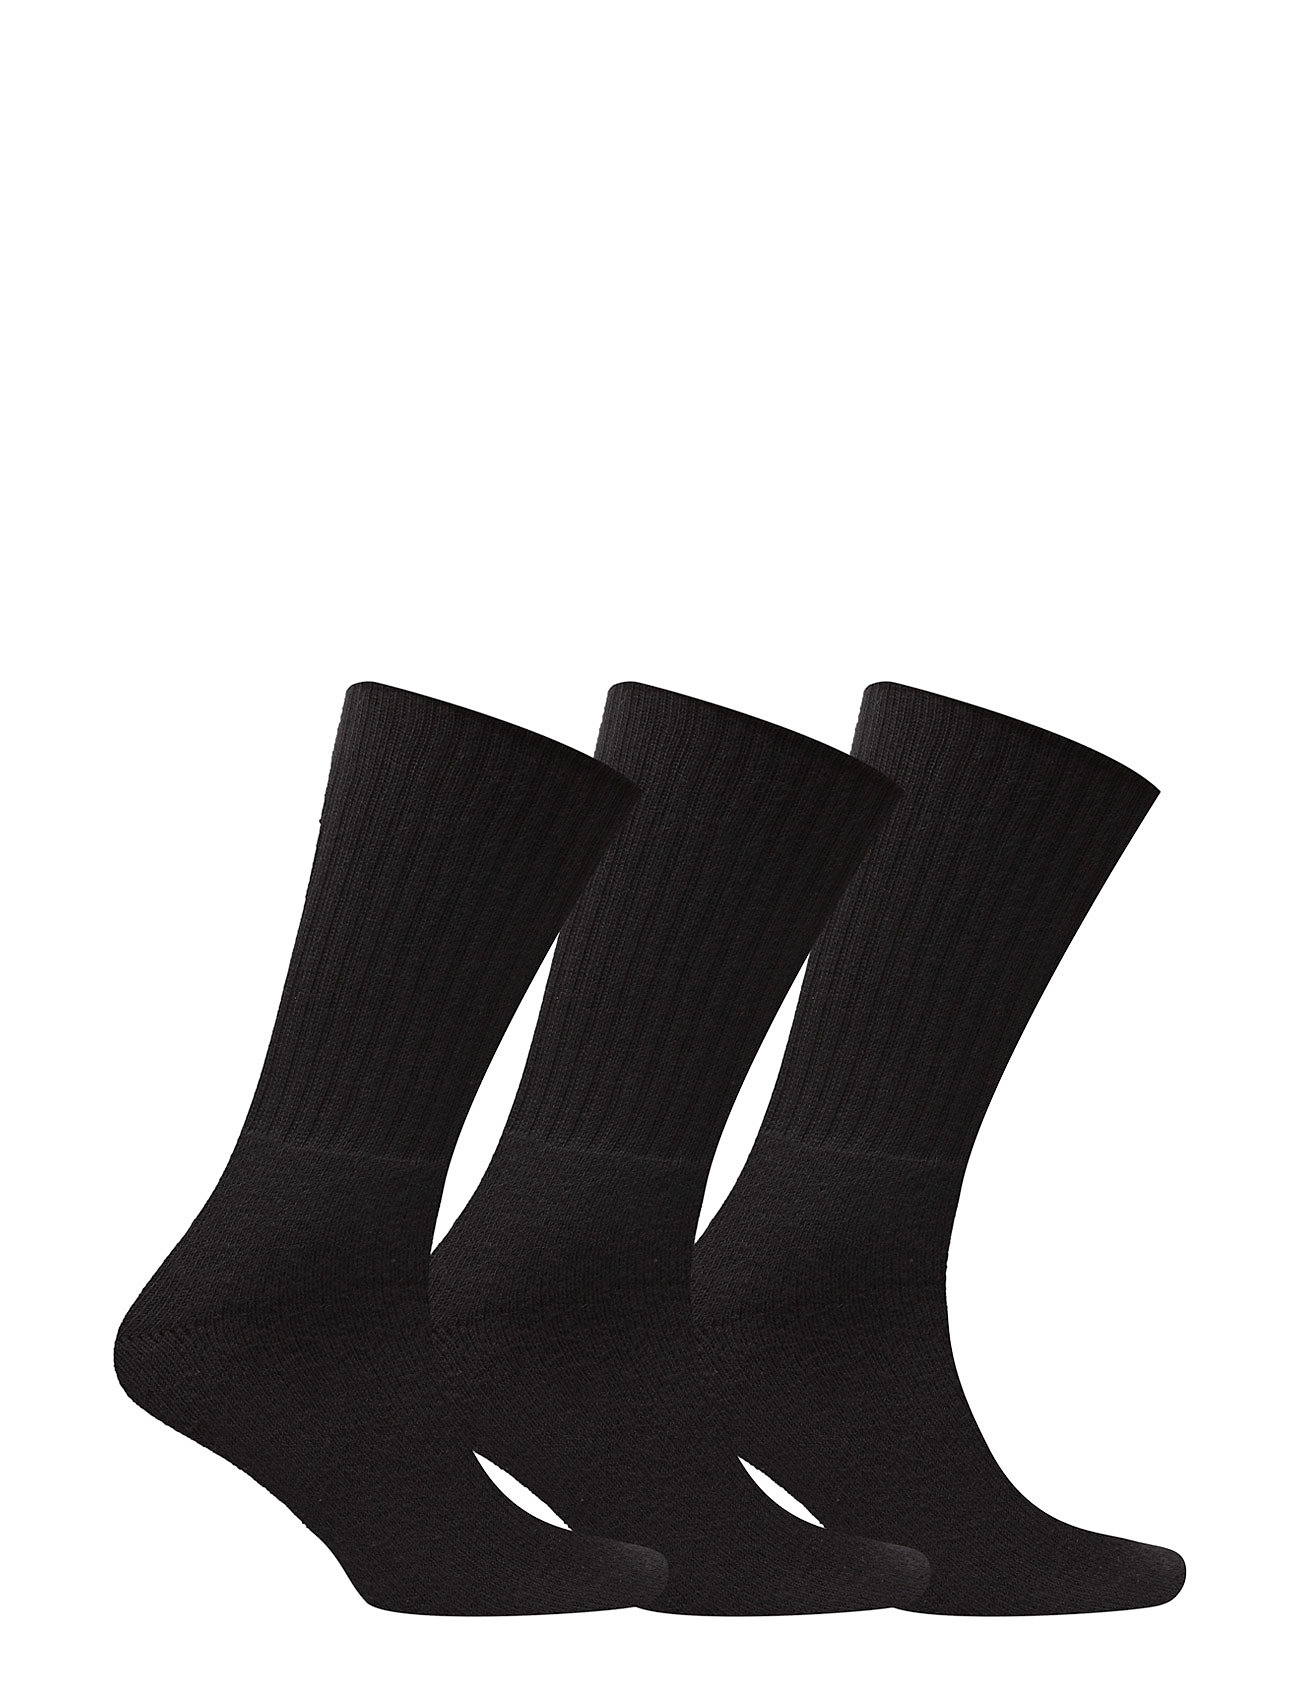 Claudio - Terry Socks 3 pack - multipack strømper - black - 1